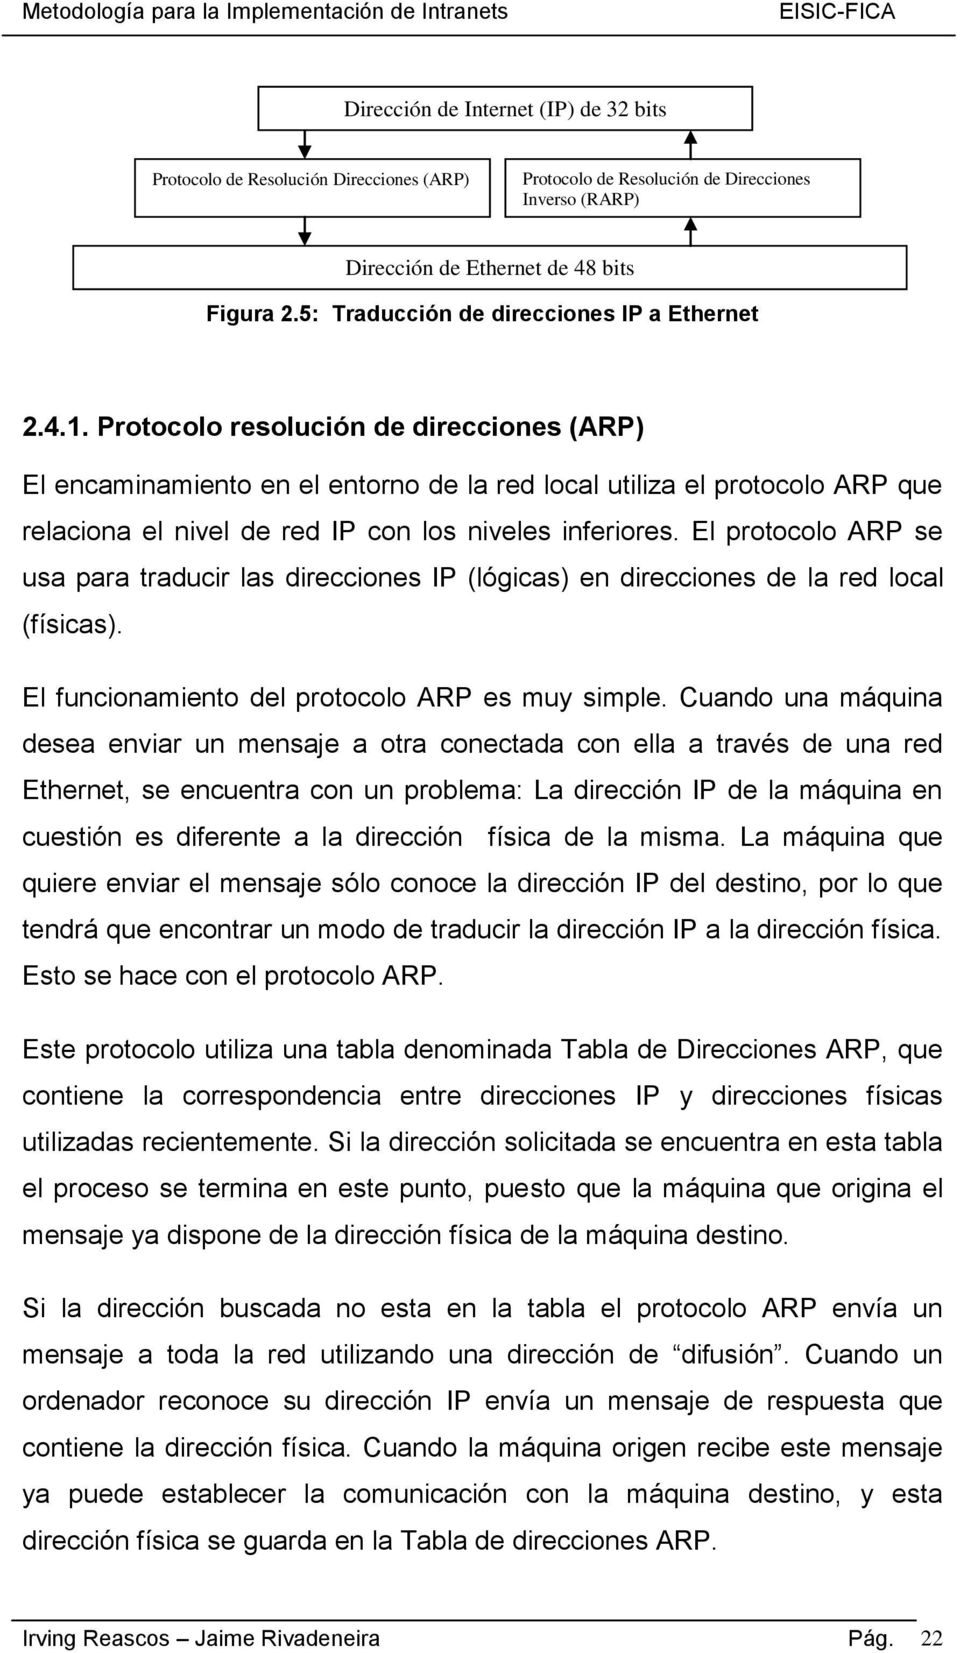 Protocolo resolución de direcciones (ARP) El encaminamiento en el entorno de la red local utiliza el protocolo ARP que relaciona el nivel de red IP con los niveles inferiores.